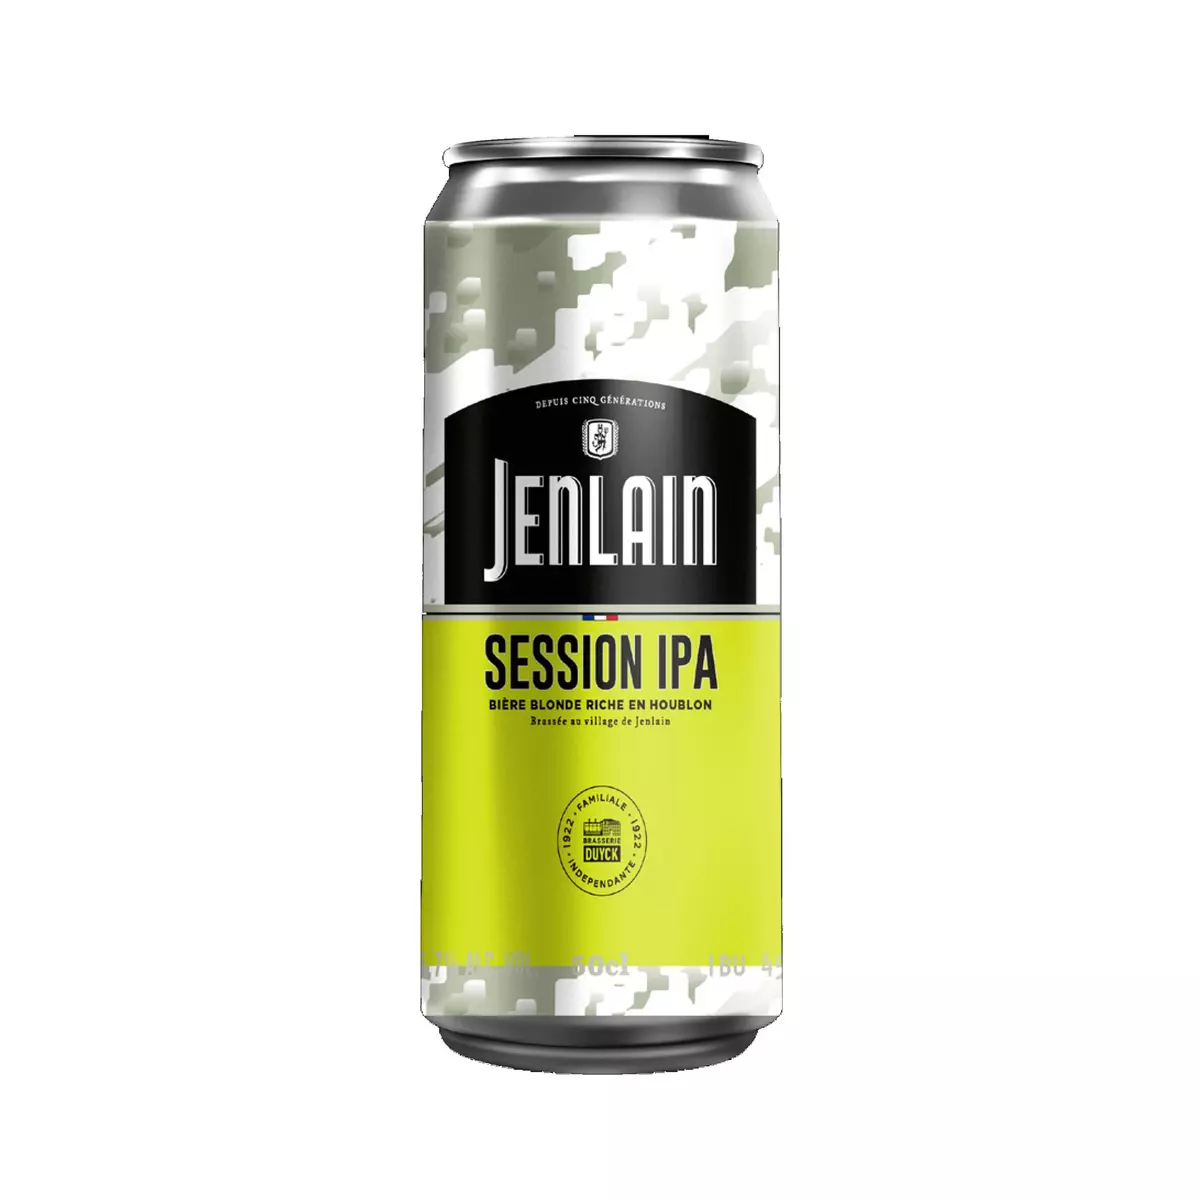 JENLAIN Bière blonde session IPA 5.7% boîte 50cl